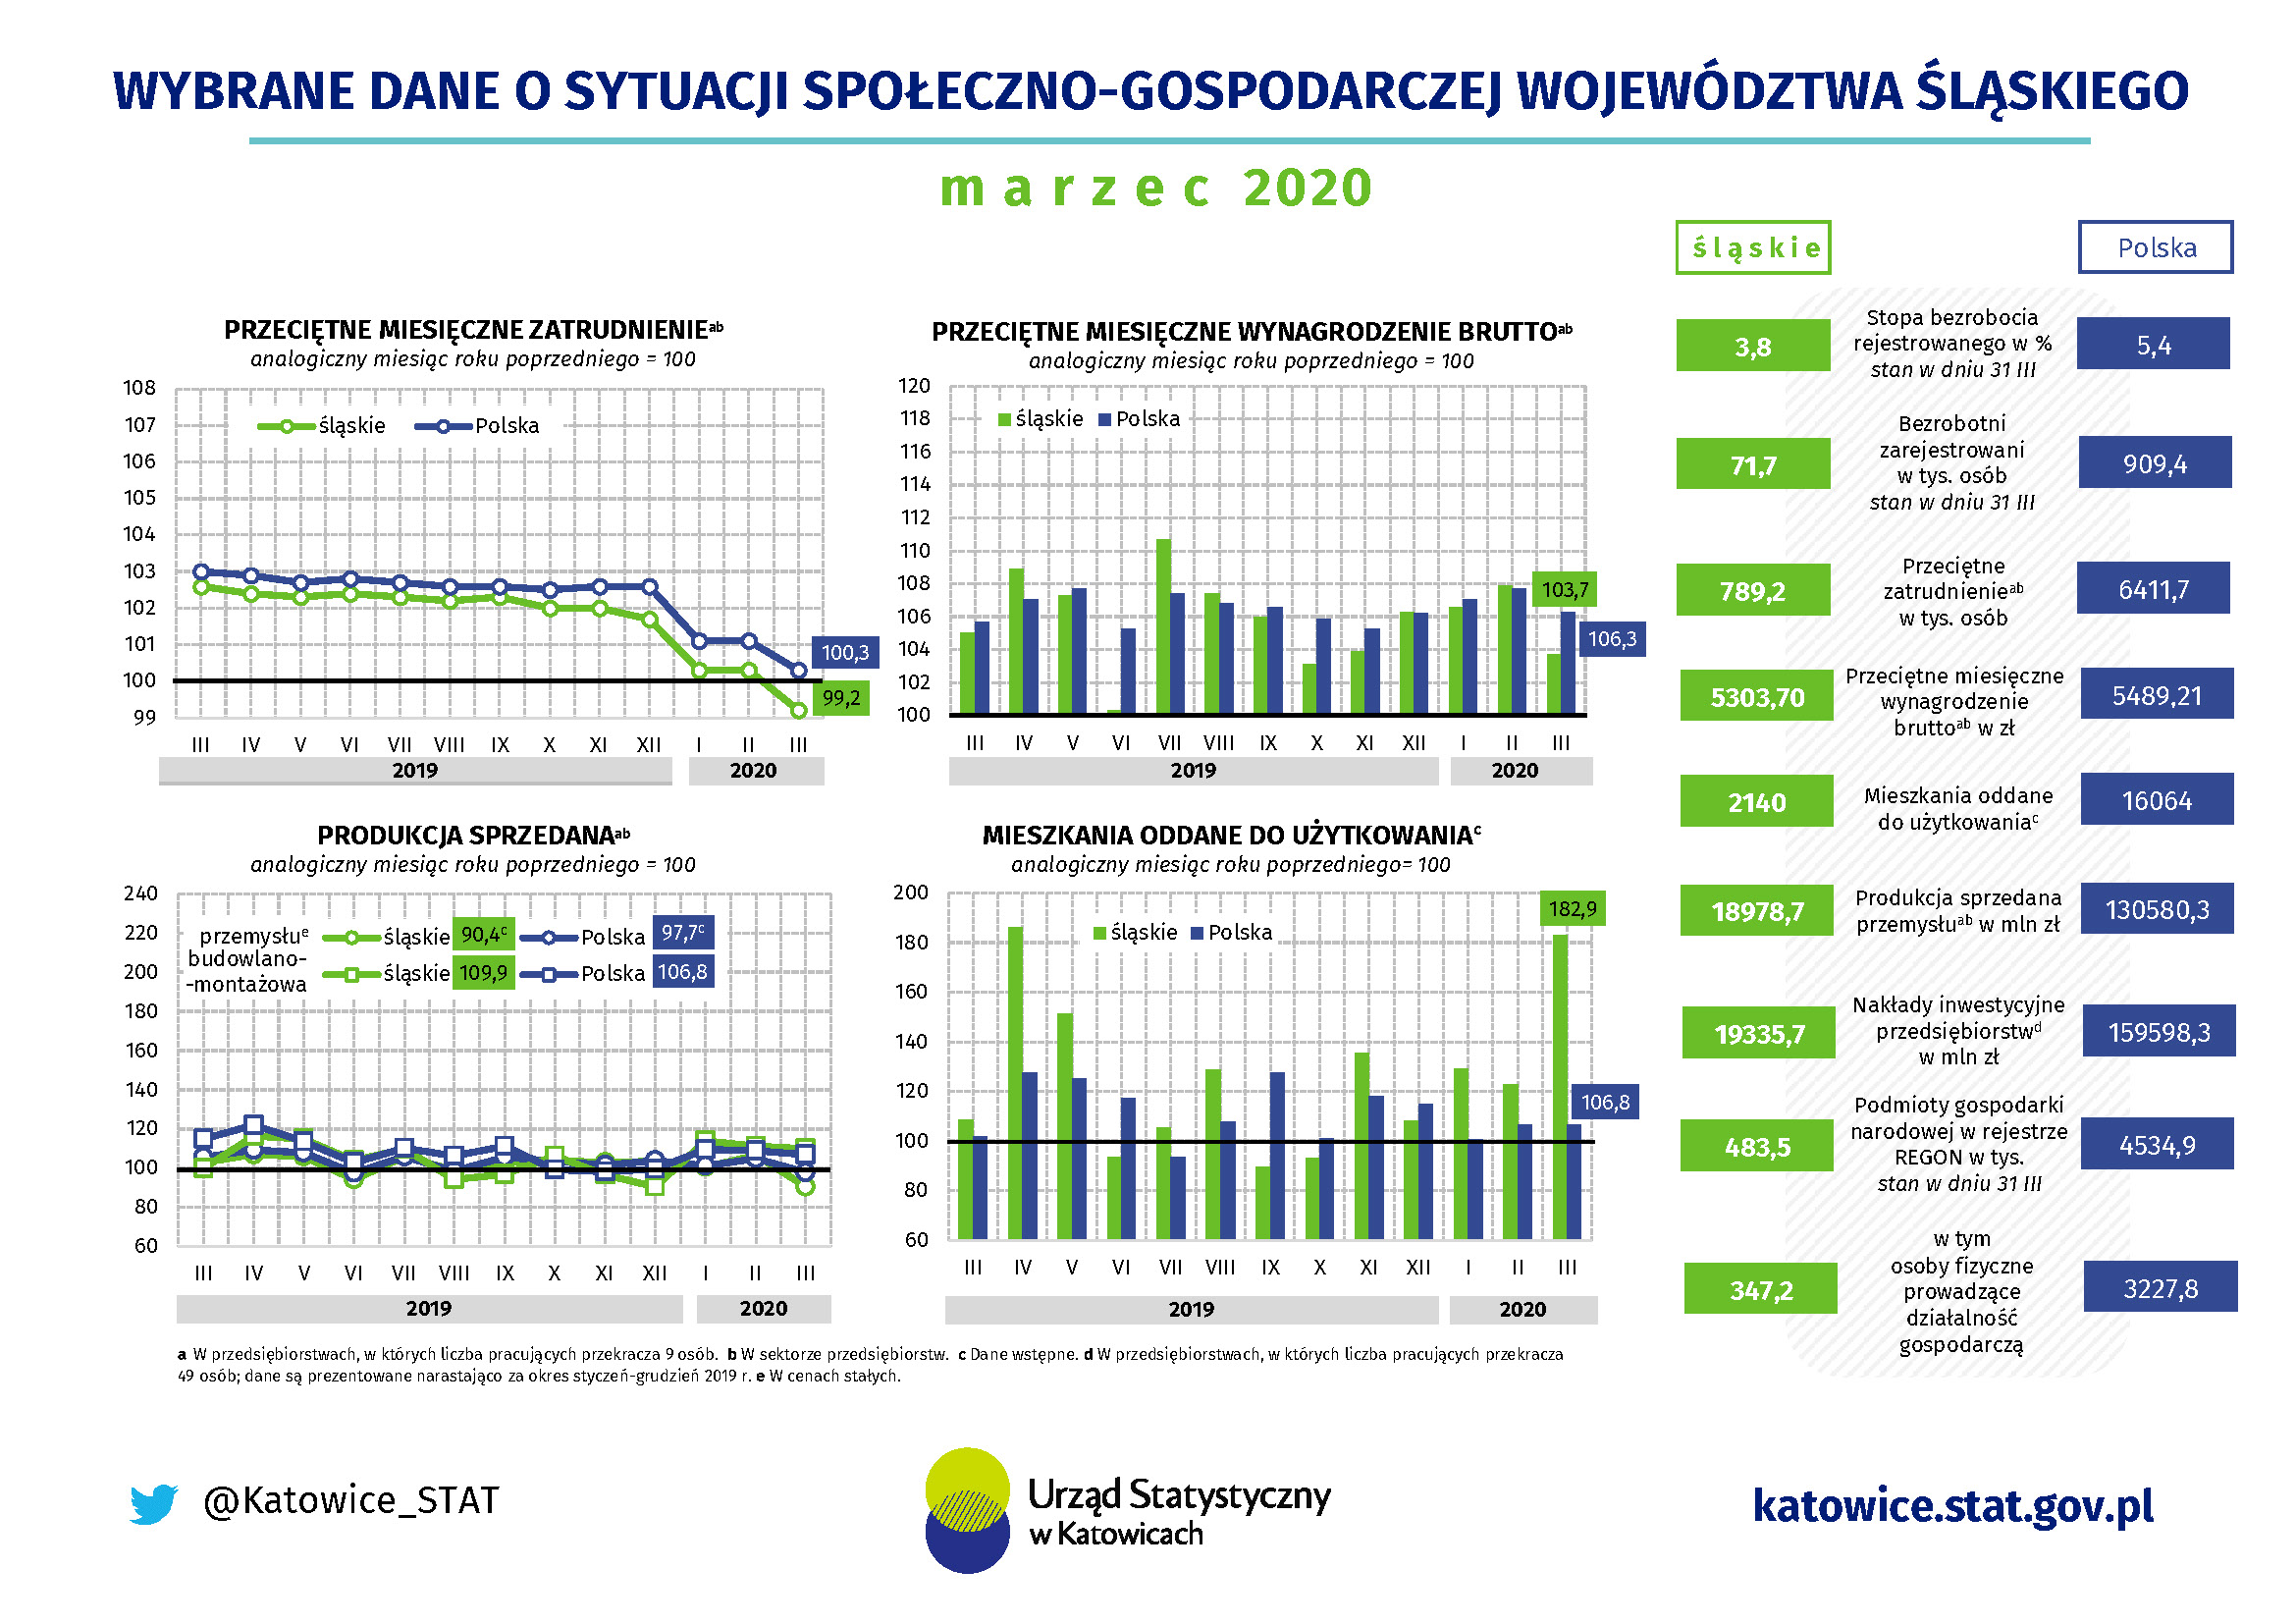 Infografika - Wybrane dane o sytuacji społeczno-gospodarczej województwa śląskiego w marcu 2020 r.